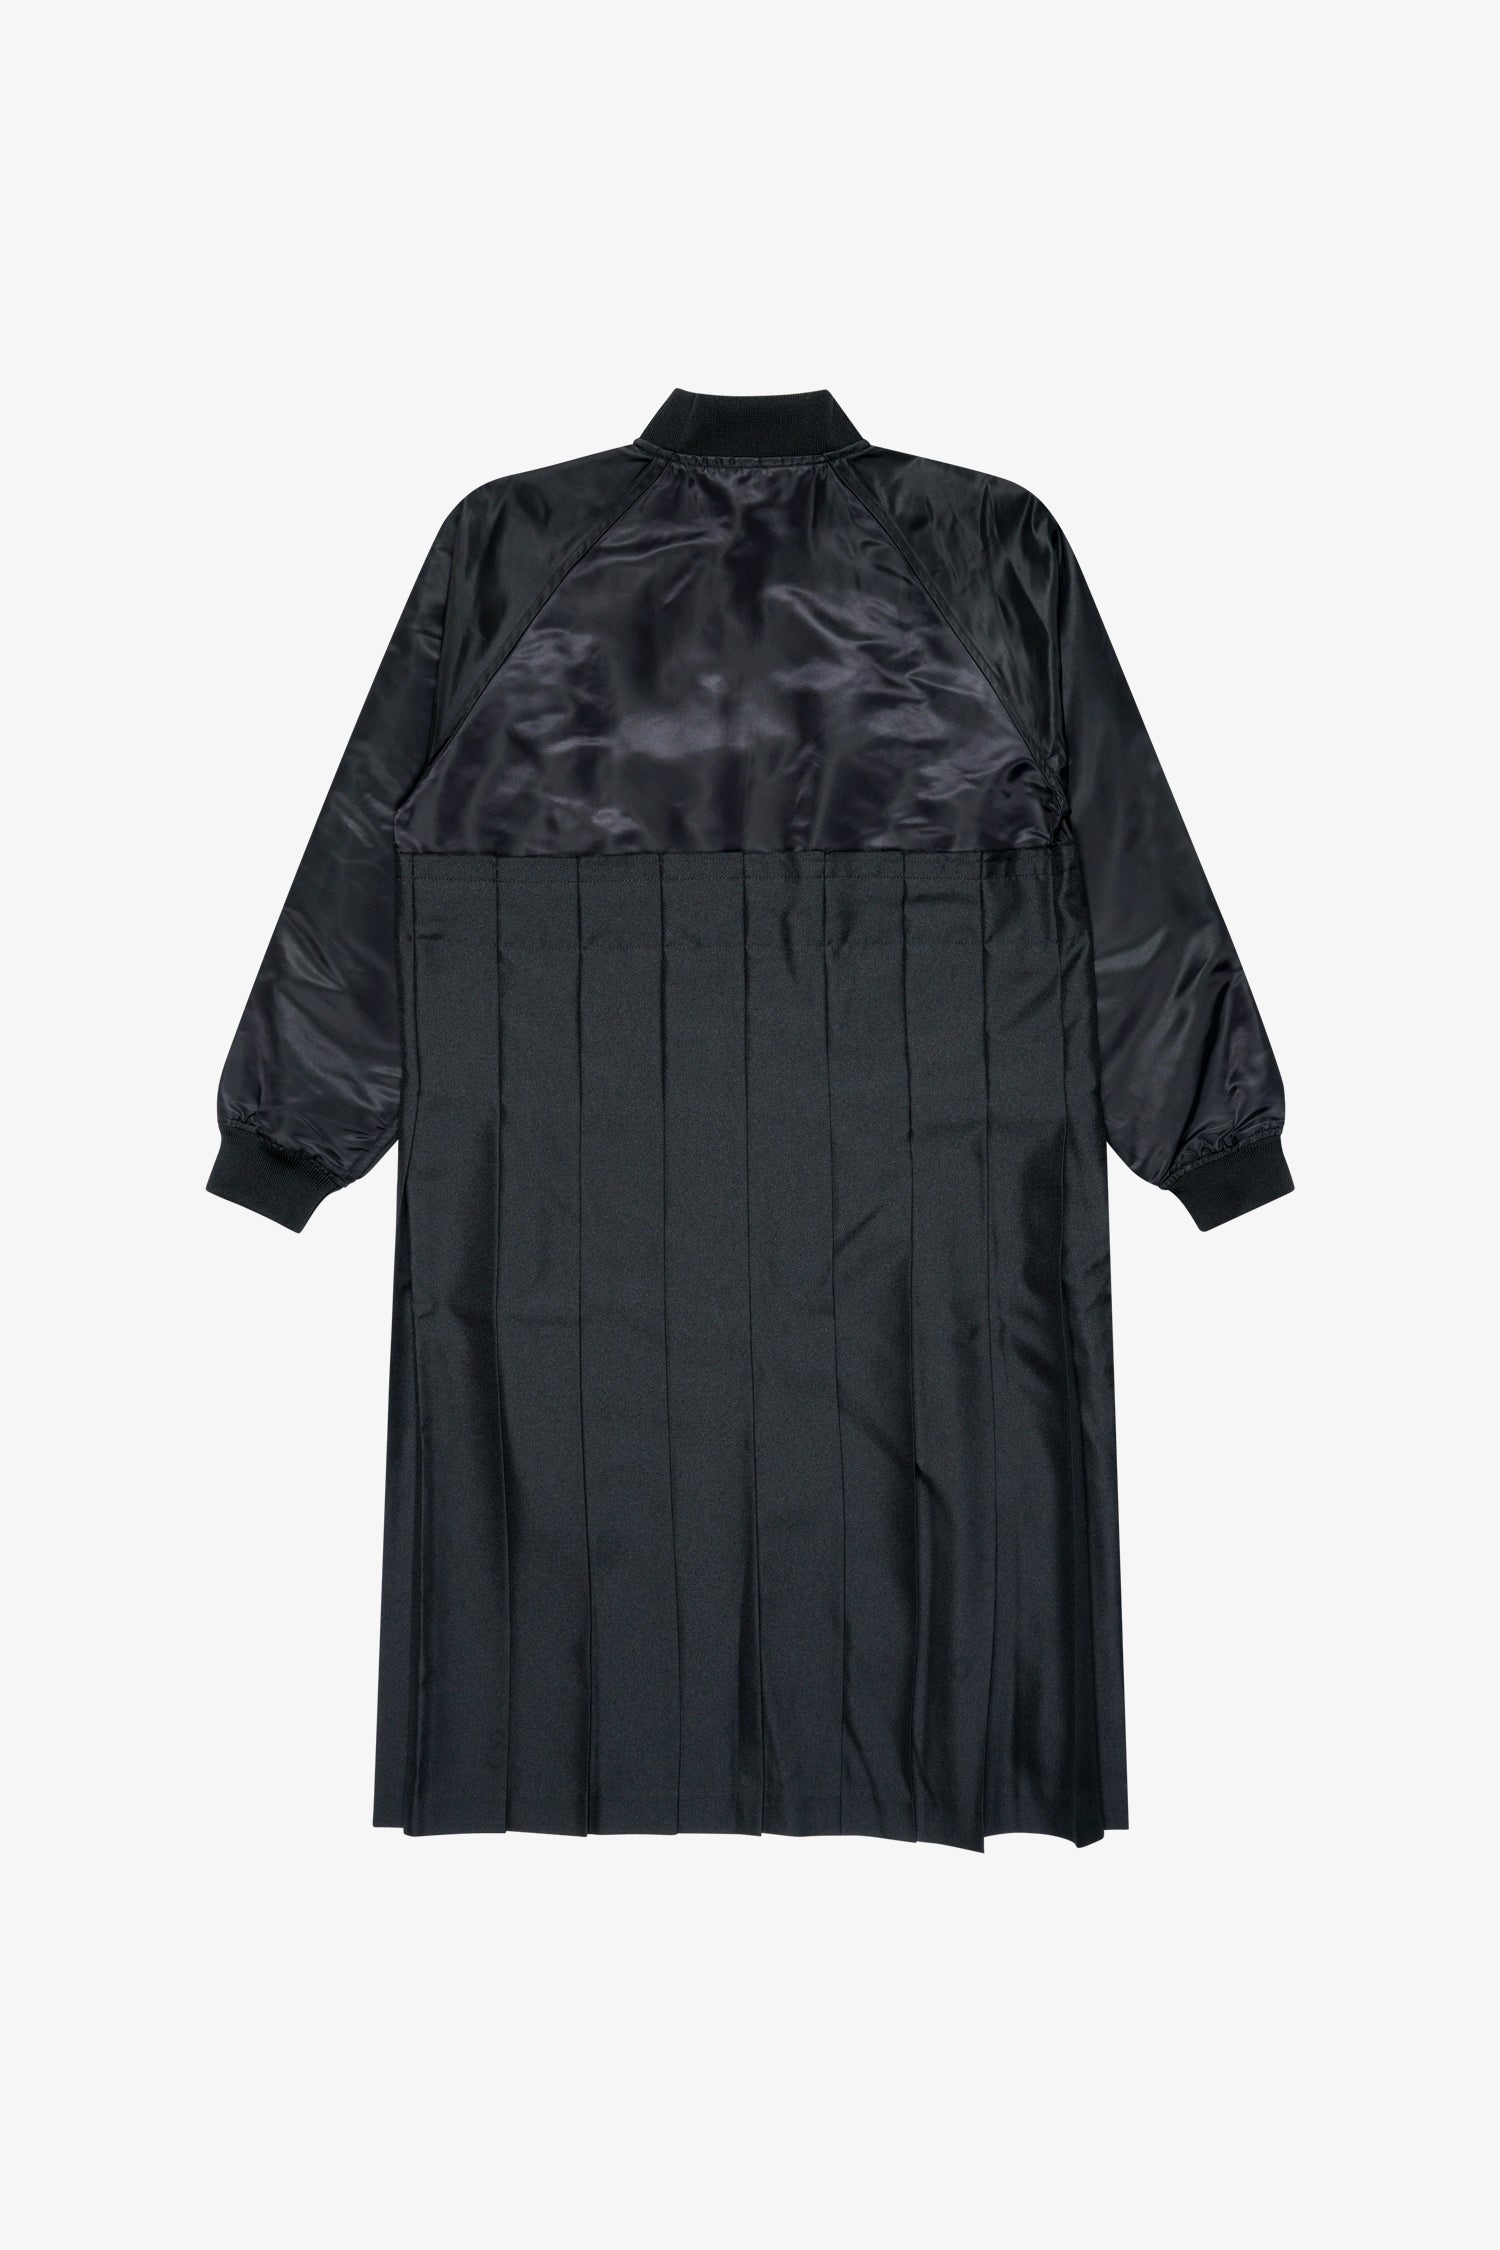 Selectshop FRAME - COMME DES GARCONS BLACK Deconstructed Pleated Satin Jacket Outerwear Dubai